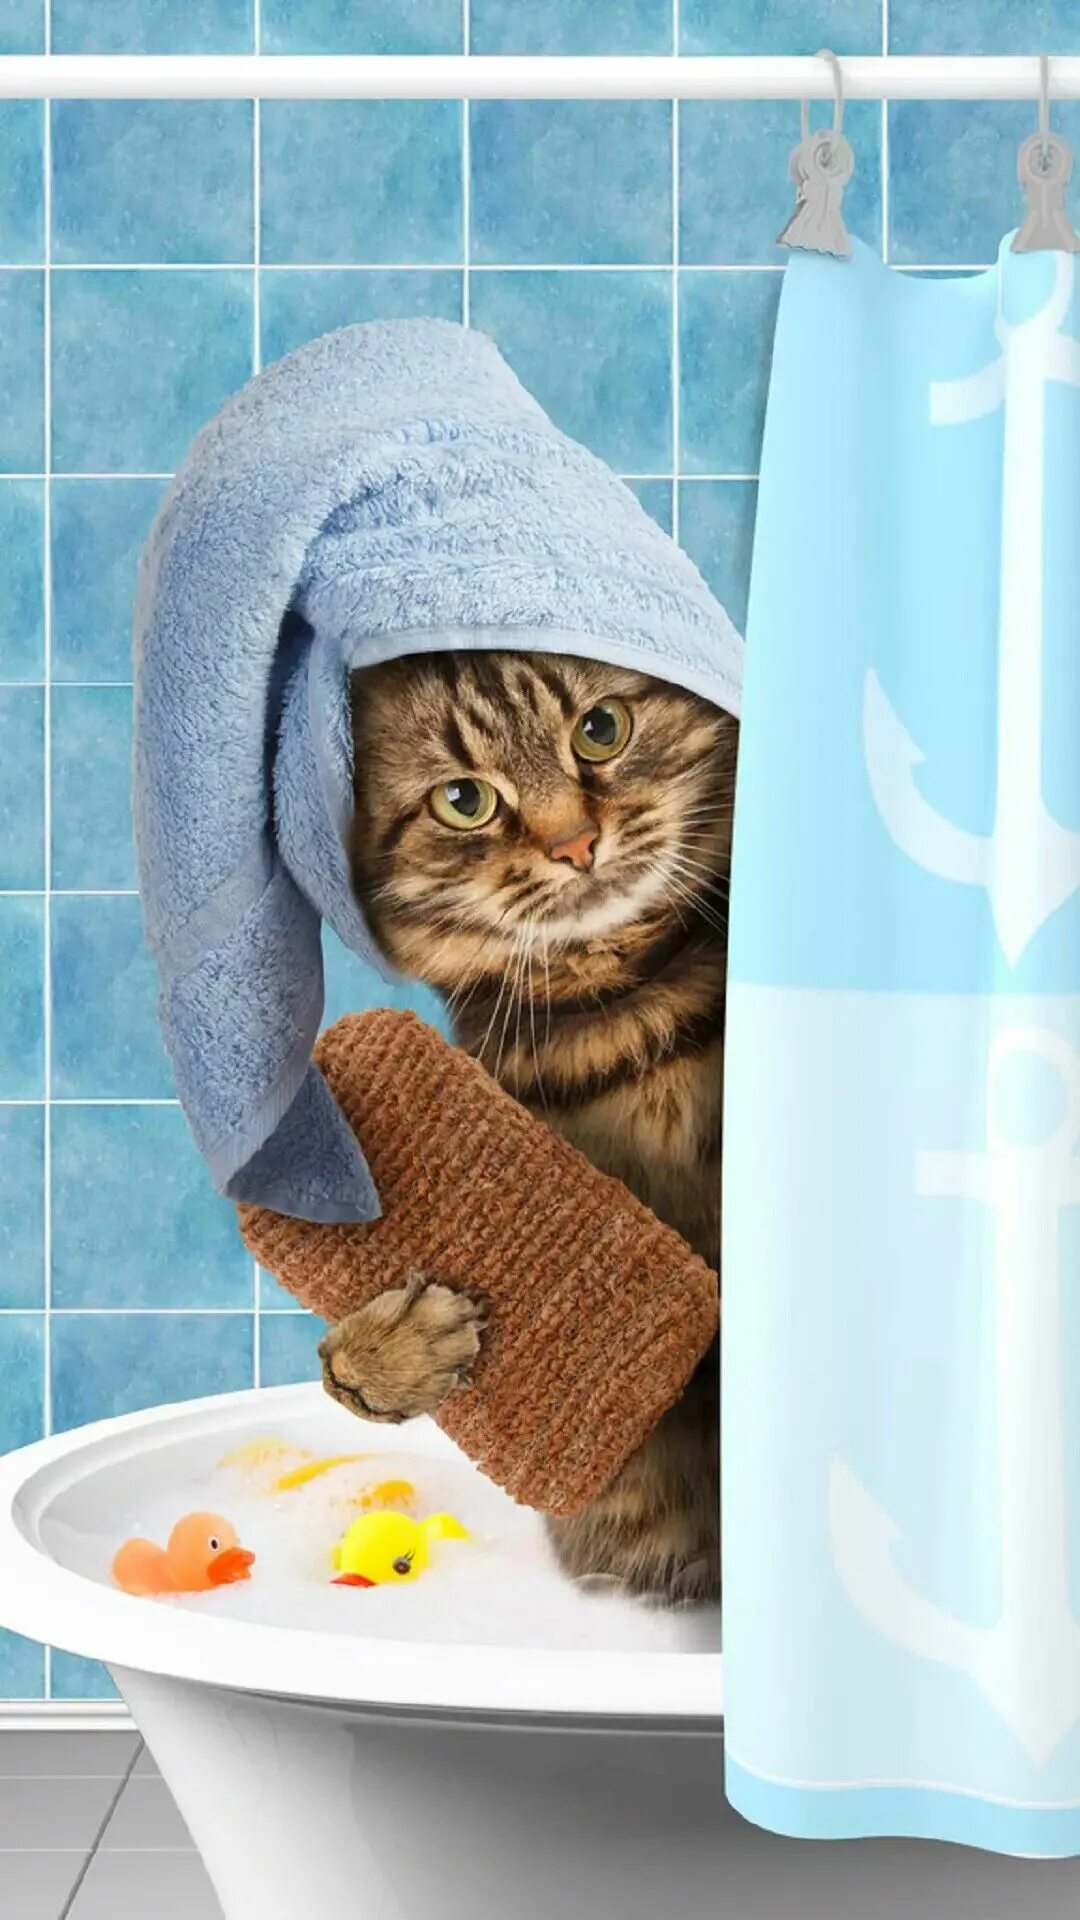 Кот в полотенце. Кот в ванне. Кошка в полотенце. Кошка с полотенцем на голове в ванной. Кот в ванной в полотенце.